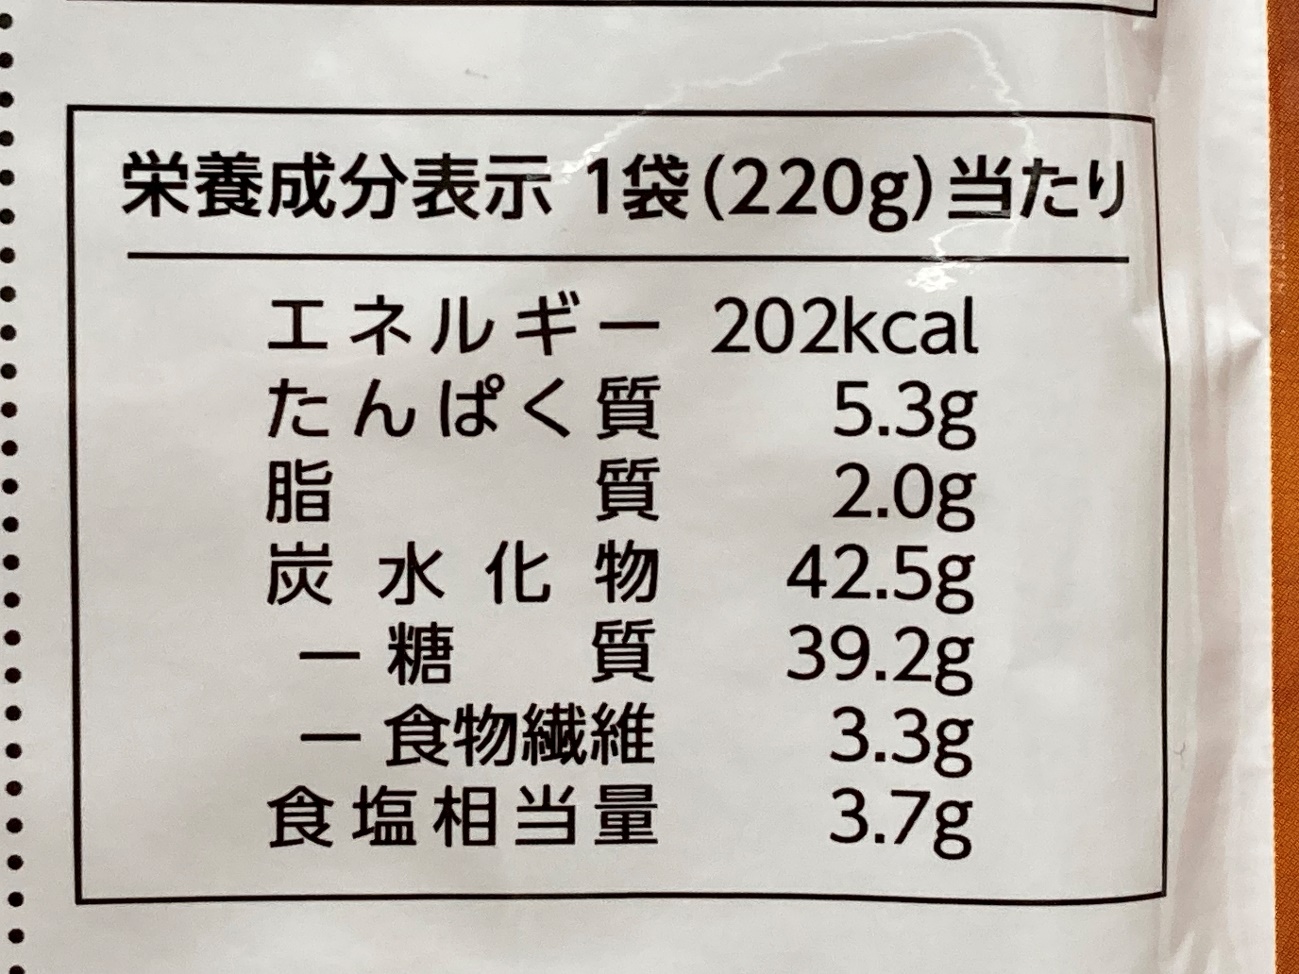 業務スーパーの玄米スパイシーカレーリゾットの栄養成分表示